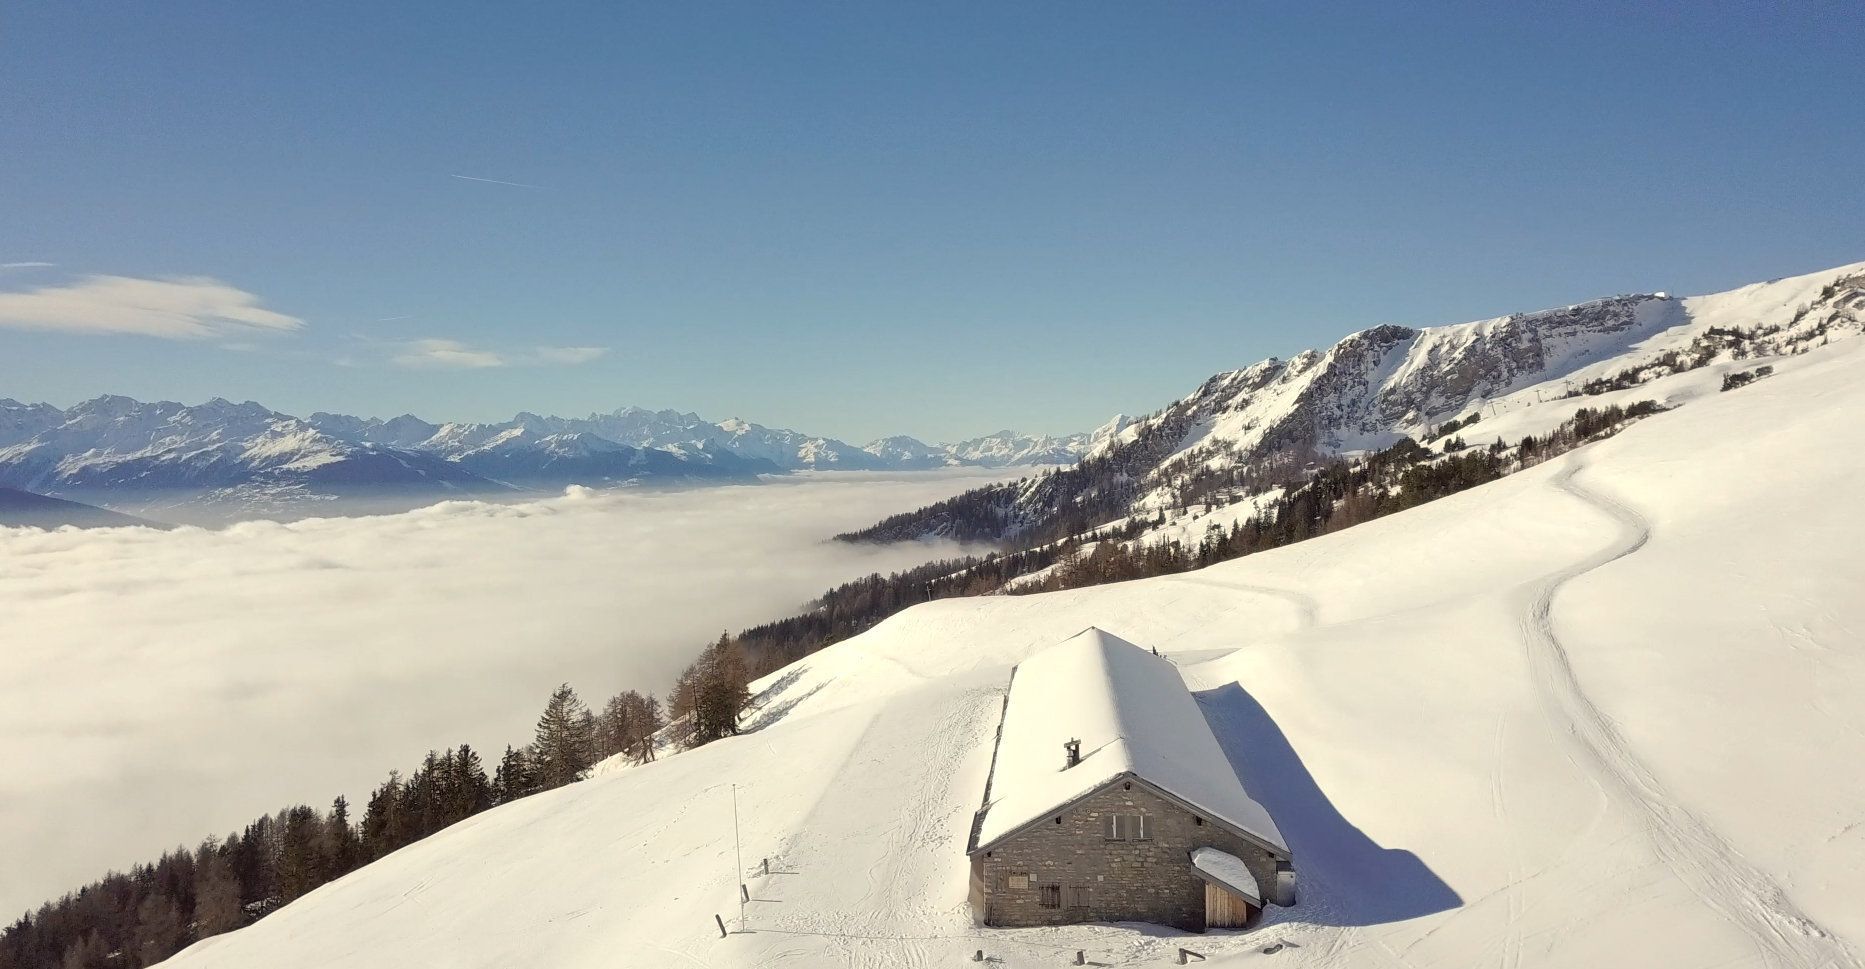 Si les Alpes sont le thème de la prochaine expo nationale, prévue en 2027, le Valais pourrait bénéficier grandement de l'événement.